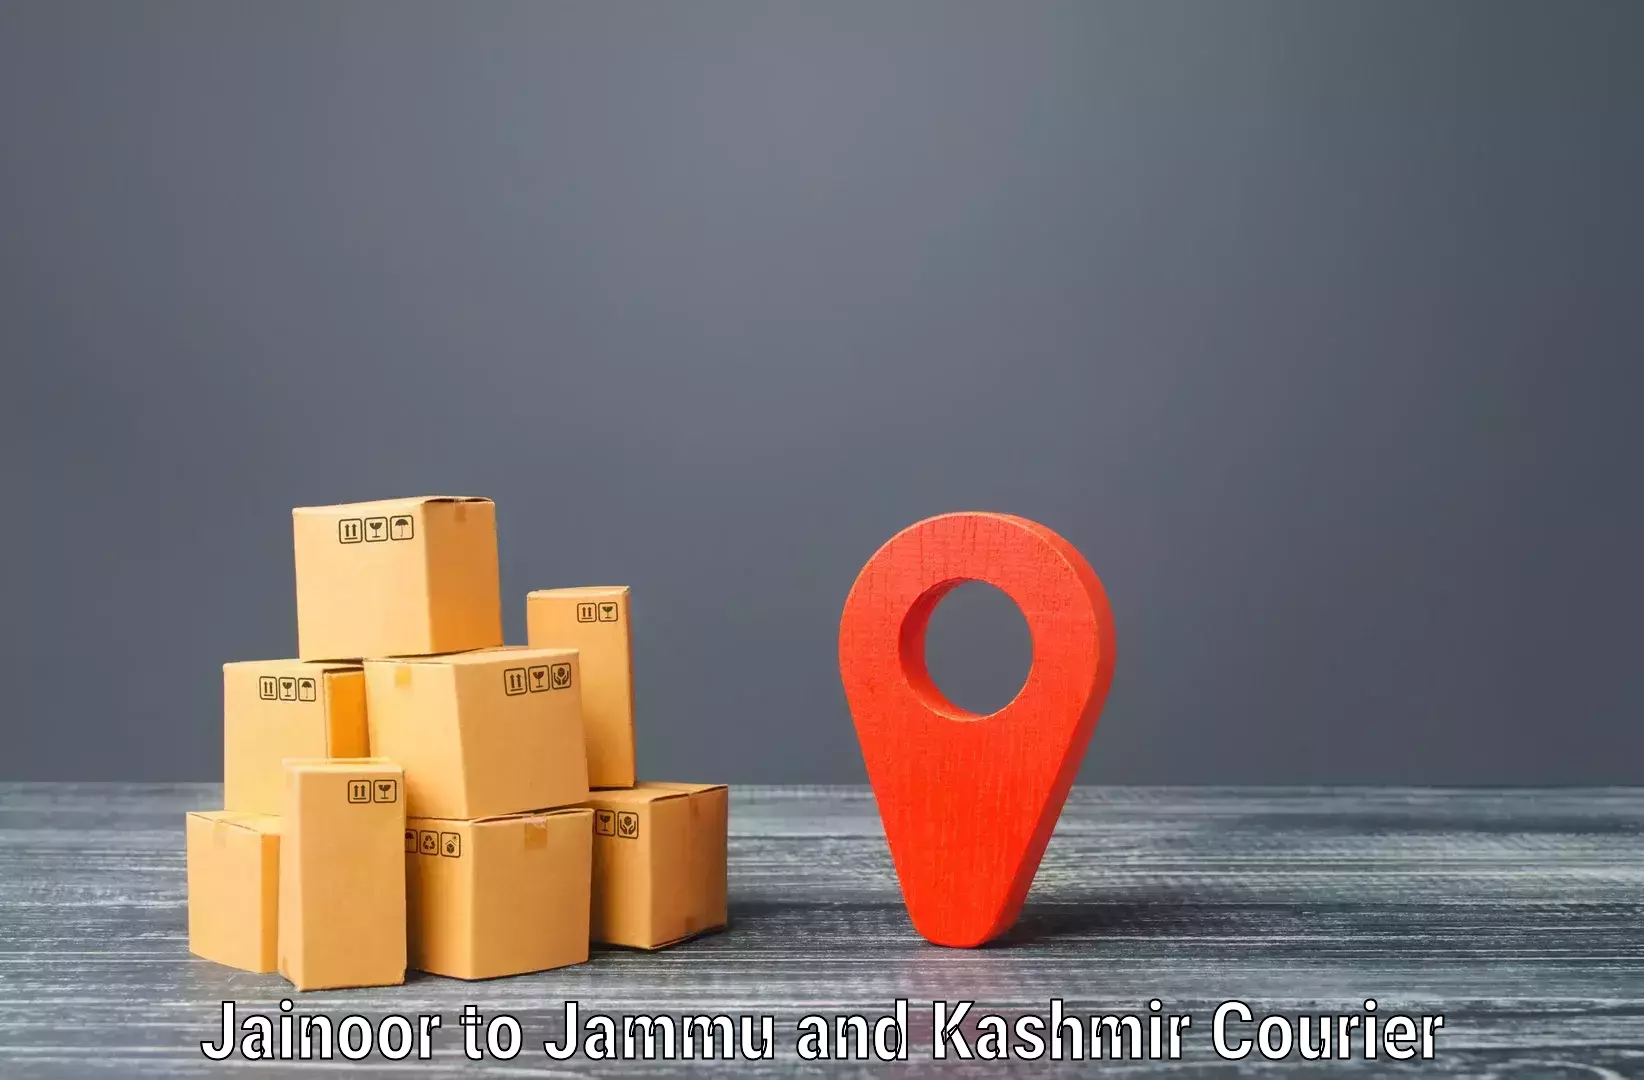 Customizable delivery plans Jainoor to Leh